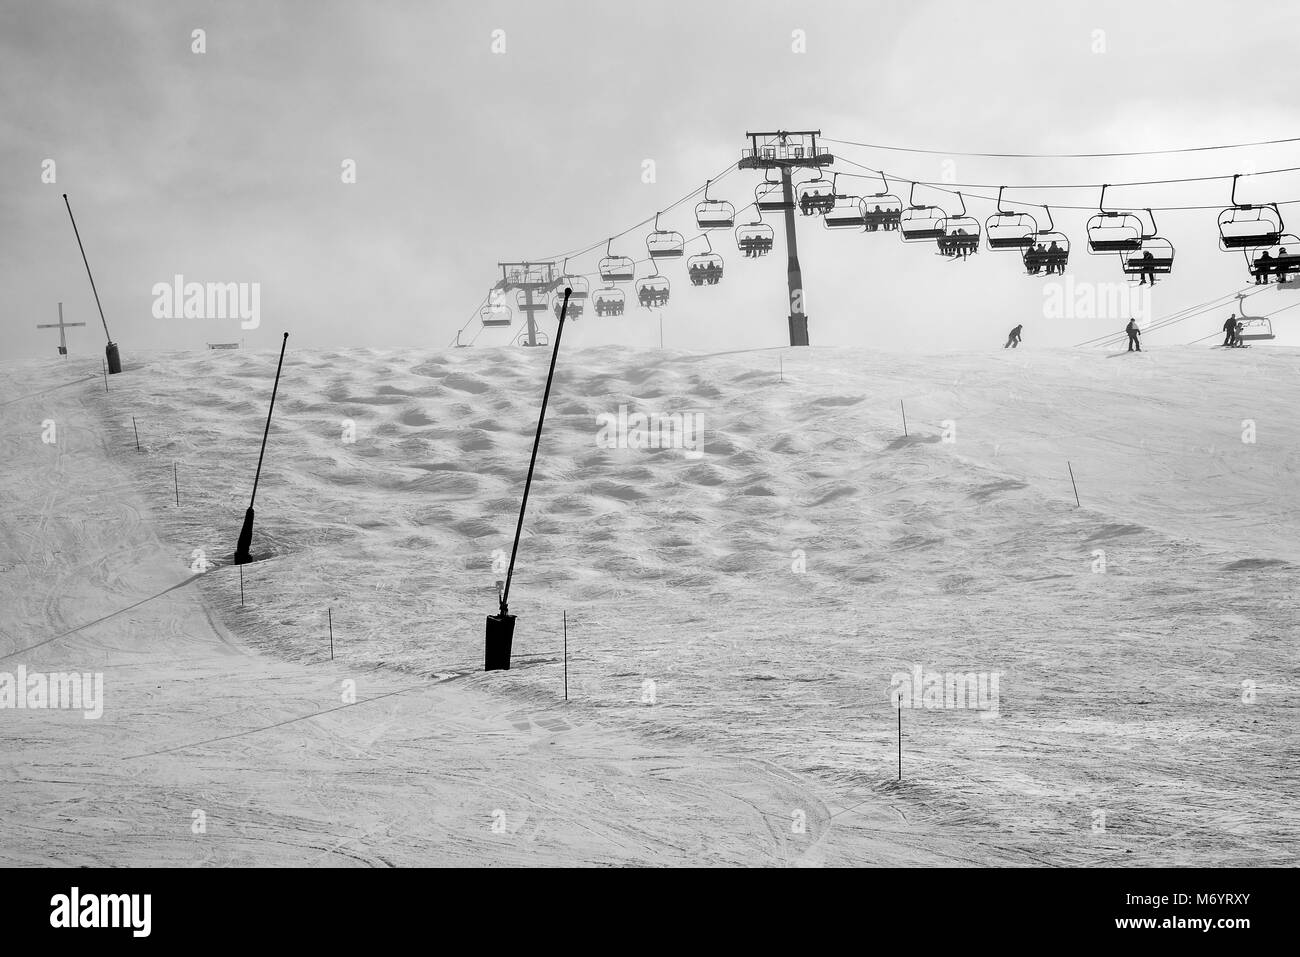 Un grand télésiège pour le transport des skieurs et planchistes jusqu'à la station de ski Les Gets près de Morzine Haute Savoie Portes du Soleil France Banque D'Images